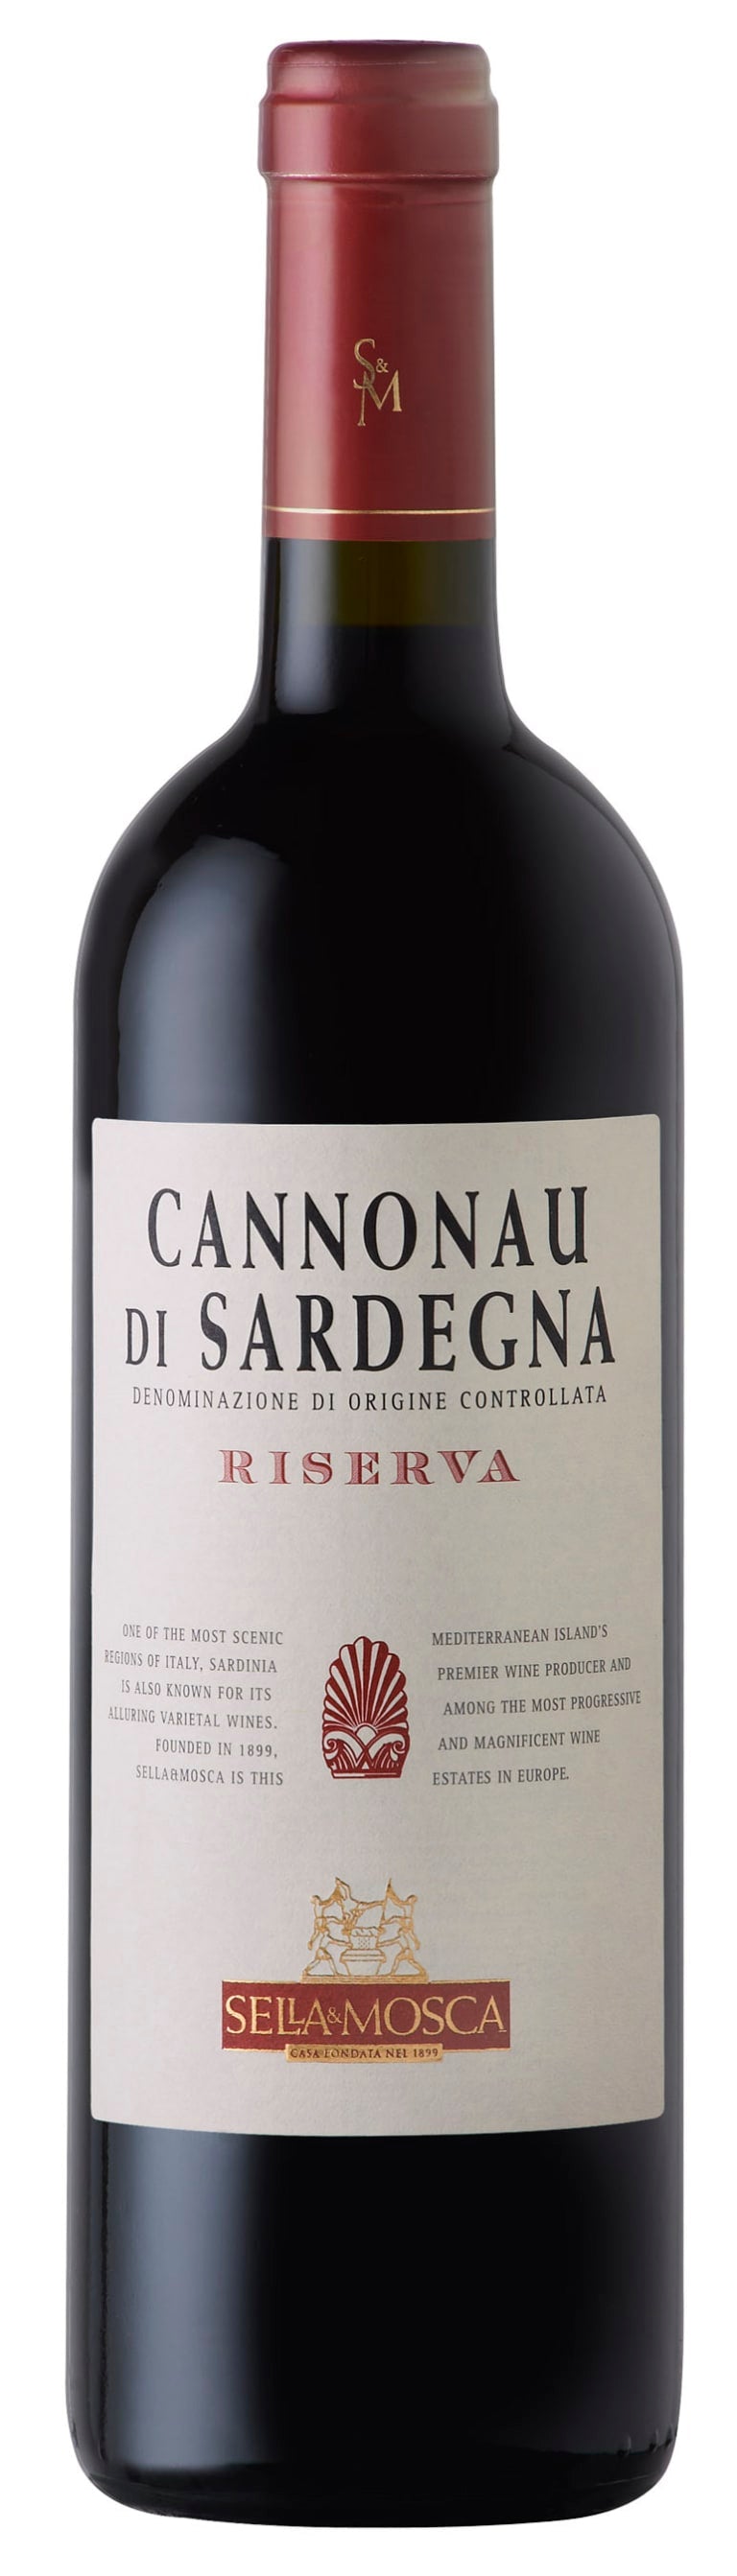 Sella & Mosca Cannonau di Sardegna Riserva 2015